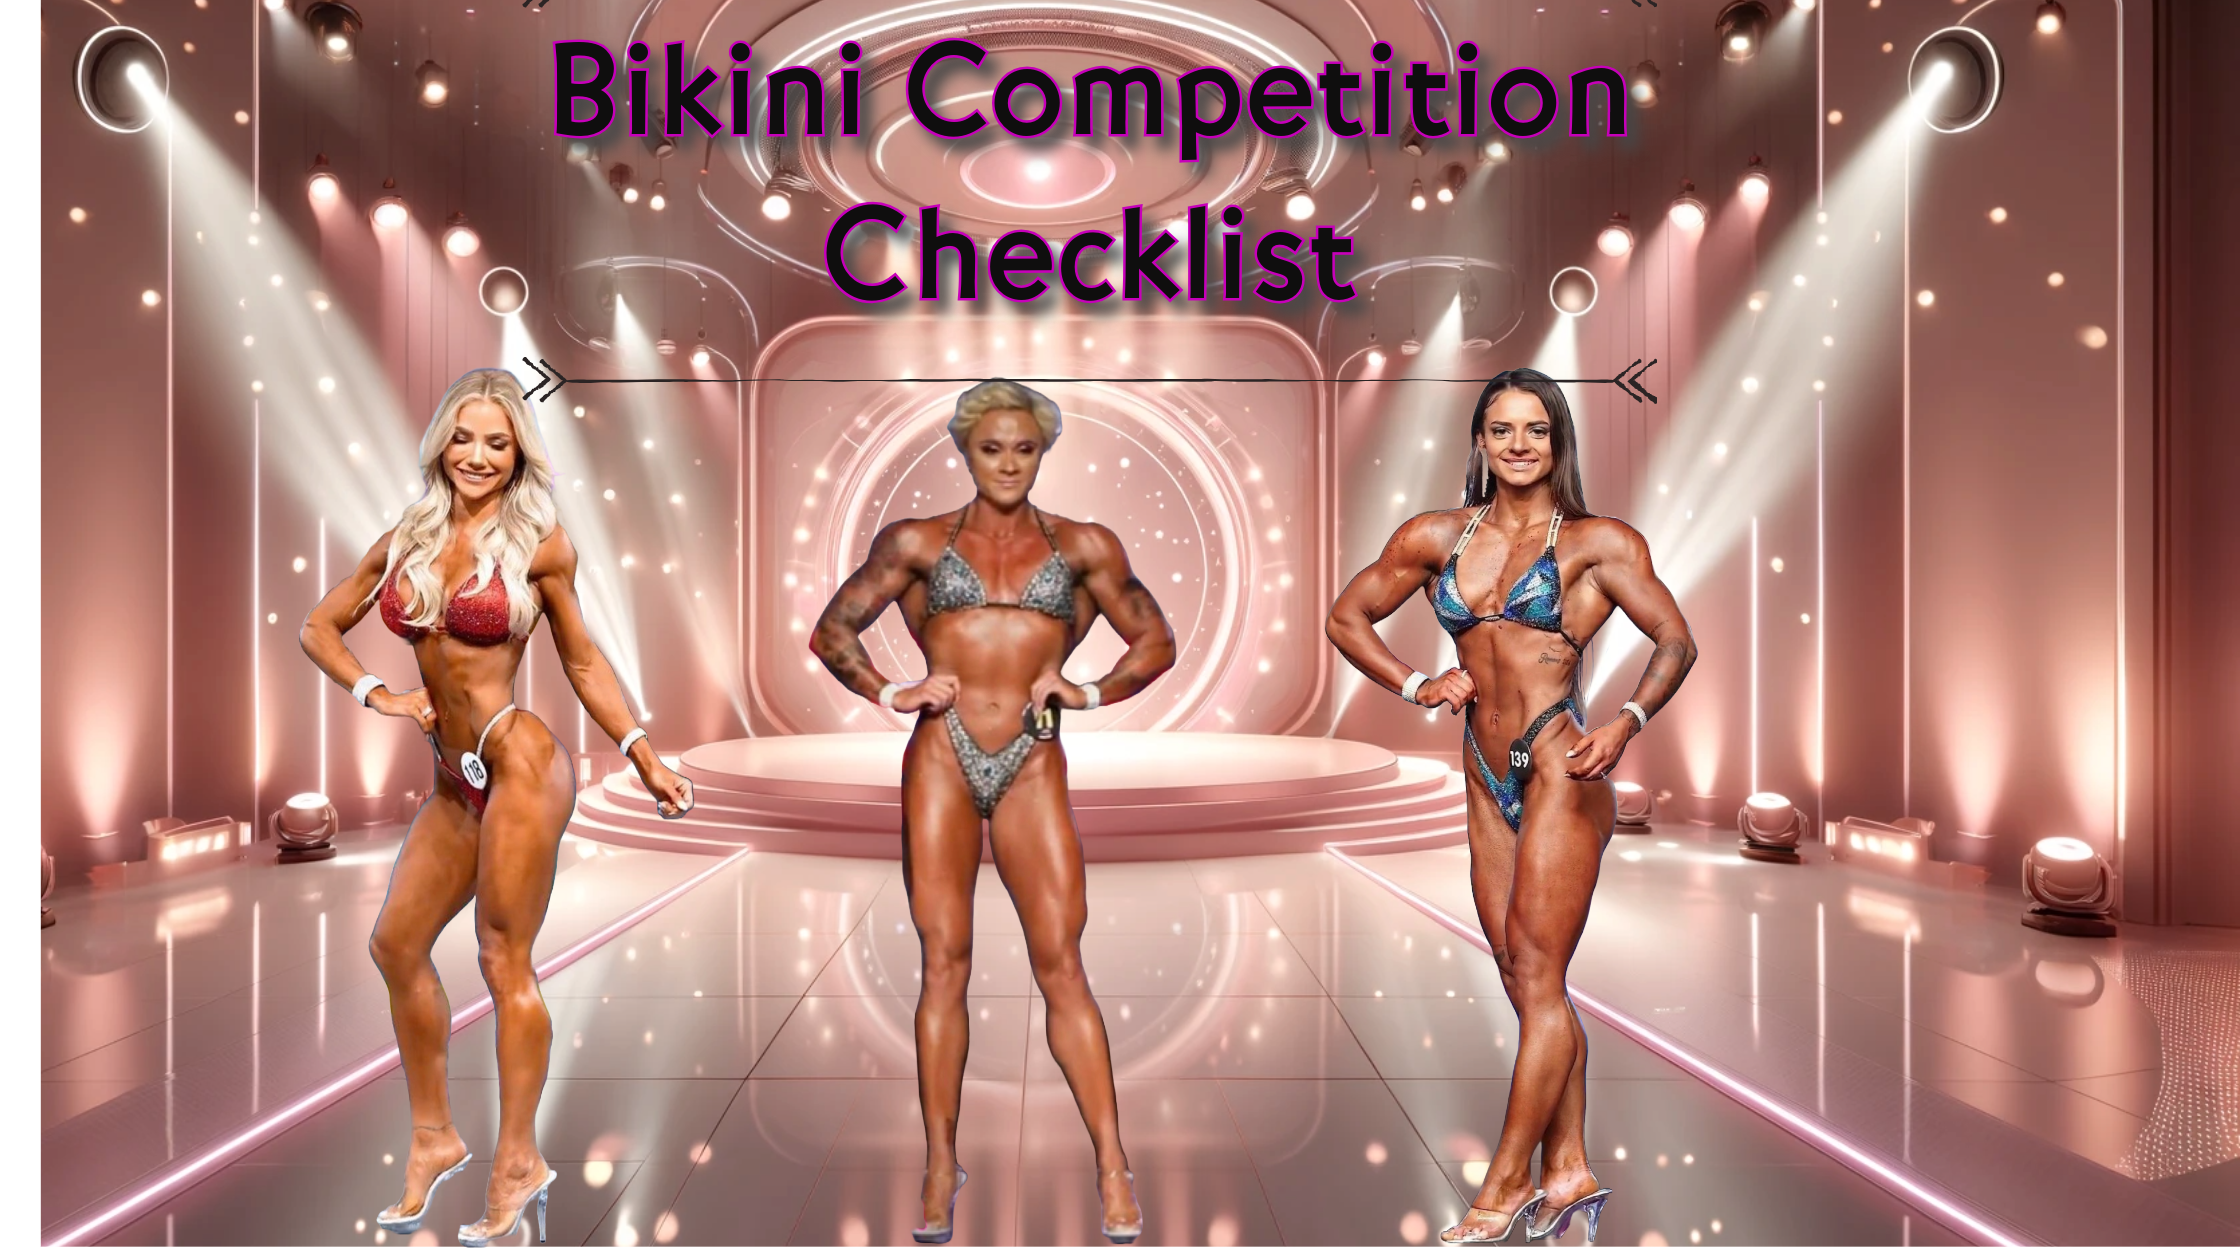 Bikini competition checklist